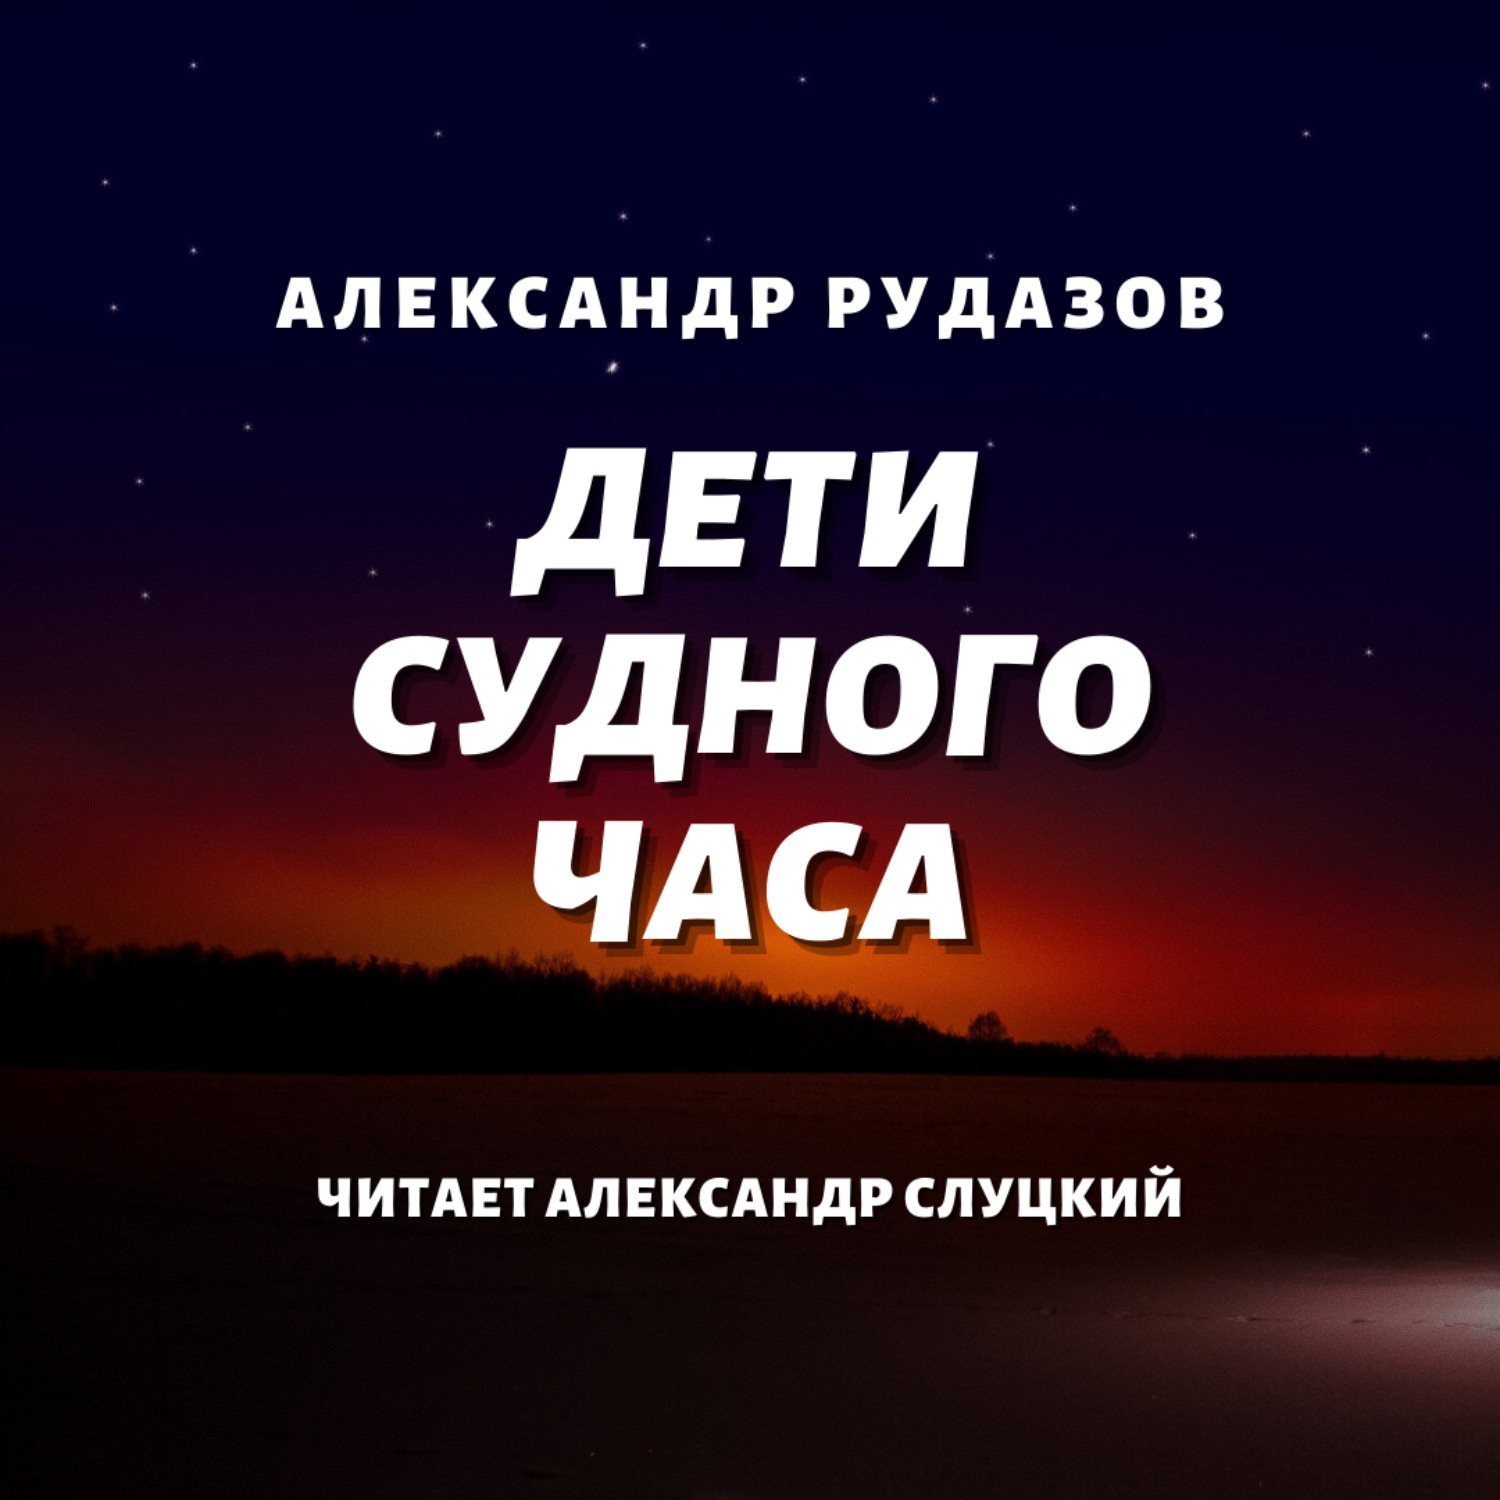 Архимаг 7, Рудазов Александр - Дети Судного Часа - обложка книги